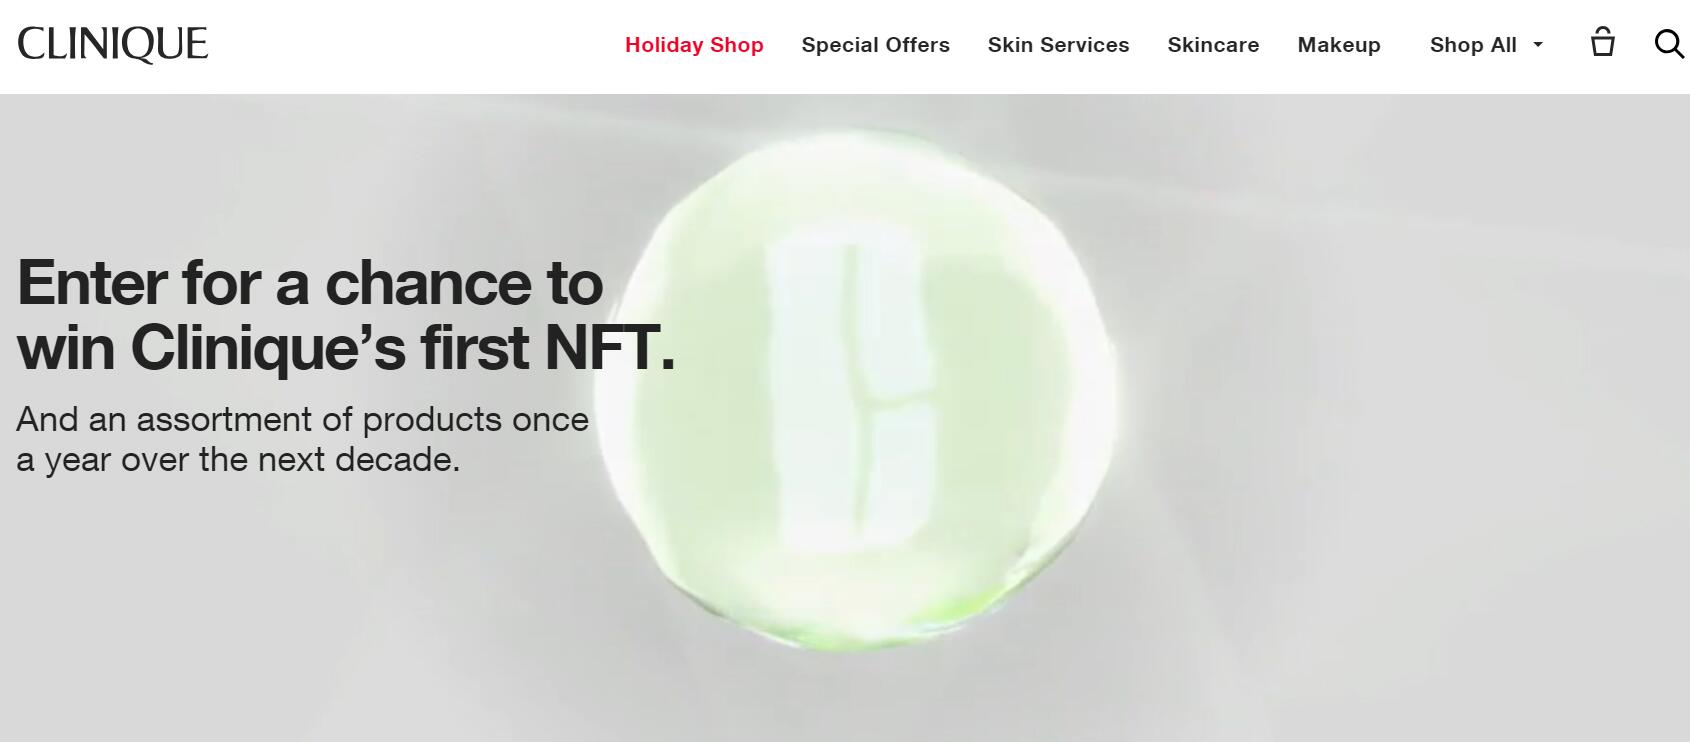 雅诗兰黛旗下 Clinique 推出首款 NFT 藏品，奖励给幸运会员